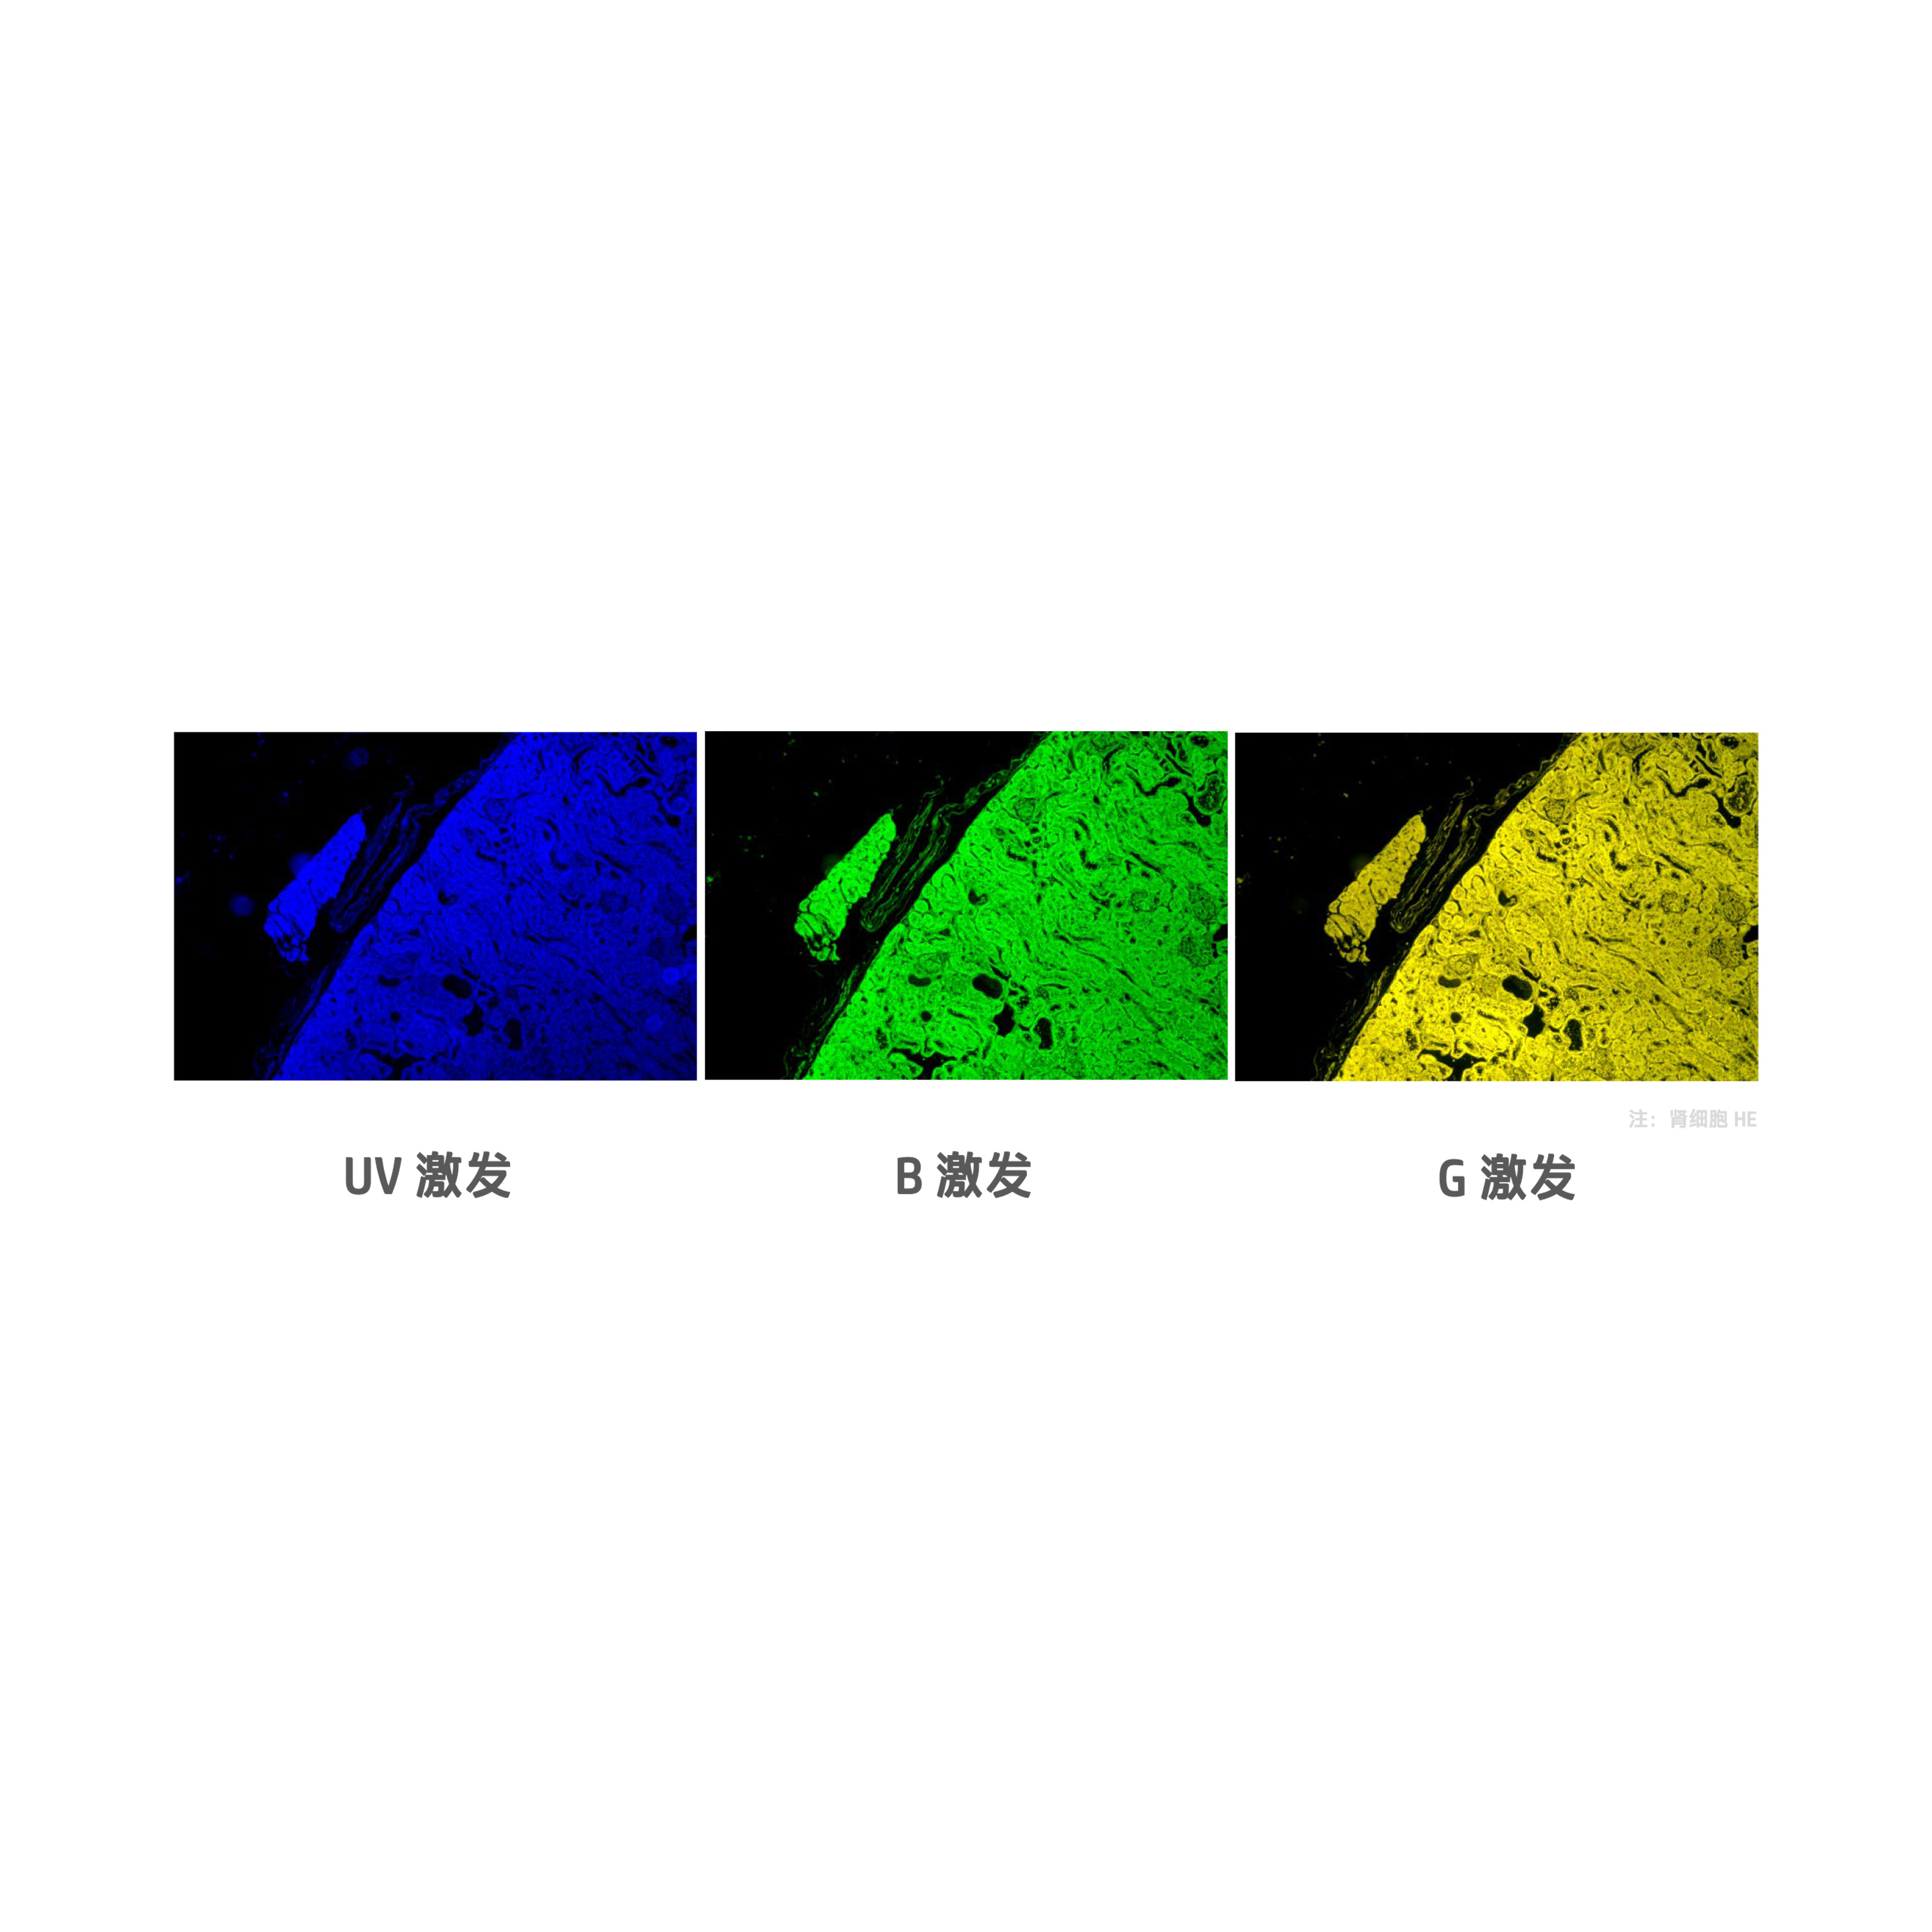 倒置荧光模块CKX-B-E 倒置显微镜CKX53配套荧光附件